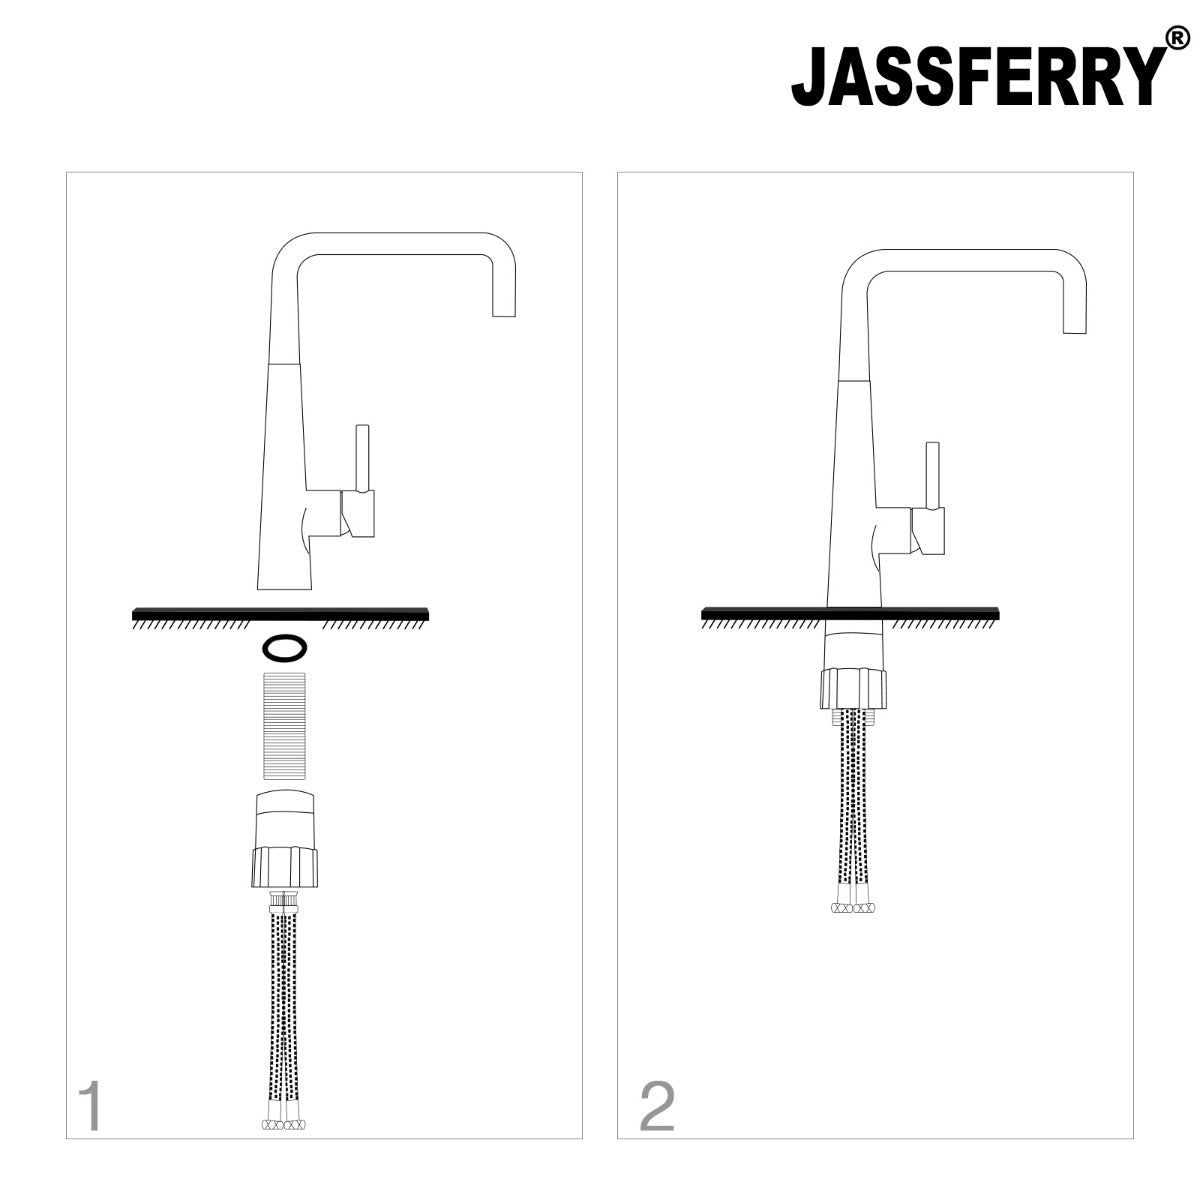 JassferryJASSFERRY Kitchen Sink Mixer Taps Single Handle Swivel Spout Chrome PolishedKitchen taps